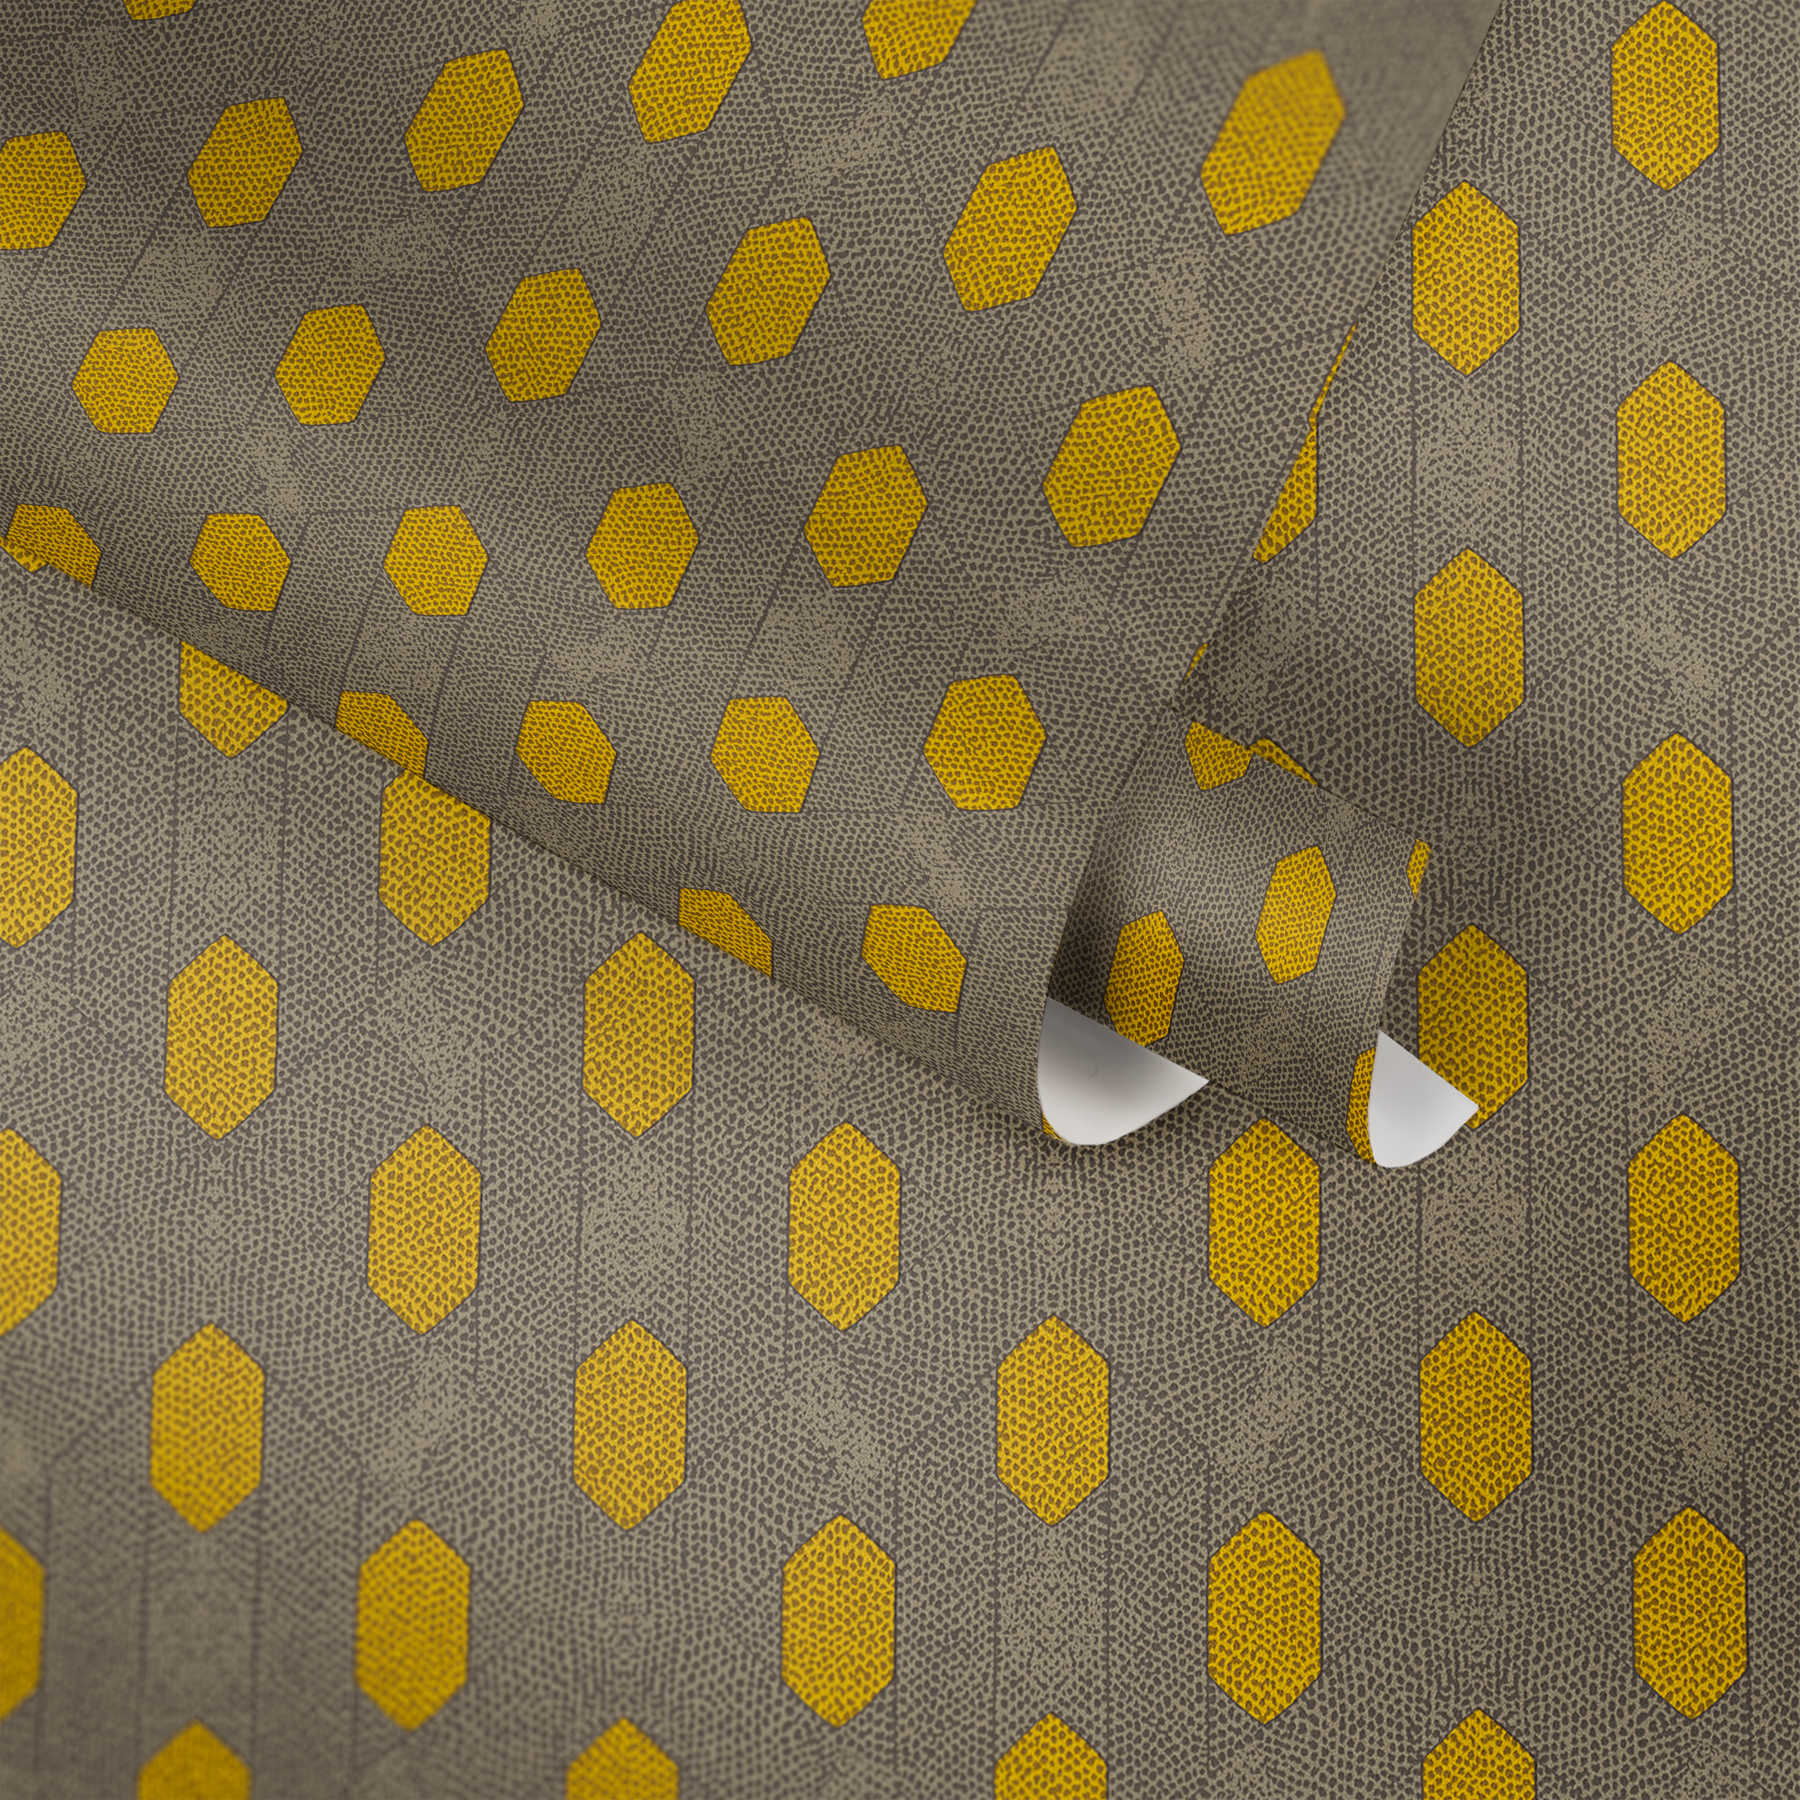             Carta da parati in tessuto non tessuto con motivo geometrico a punti - giallo, grigio, marrone
        